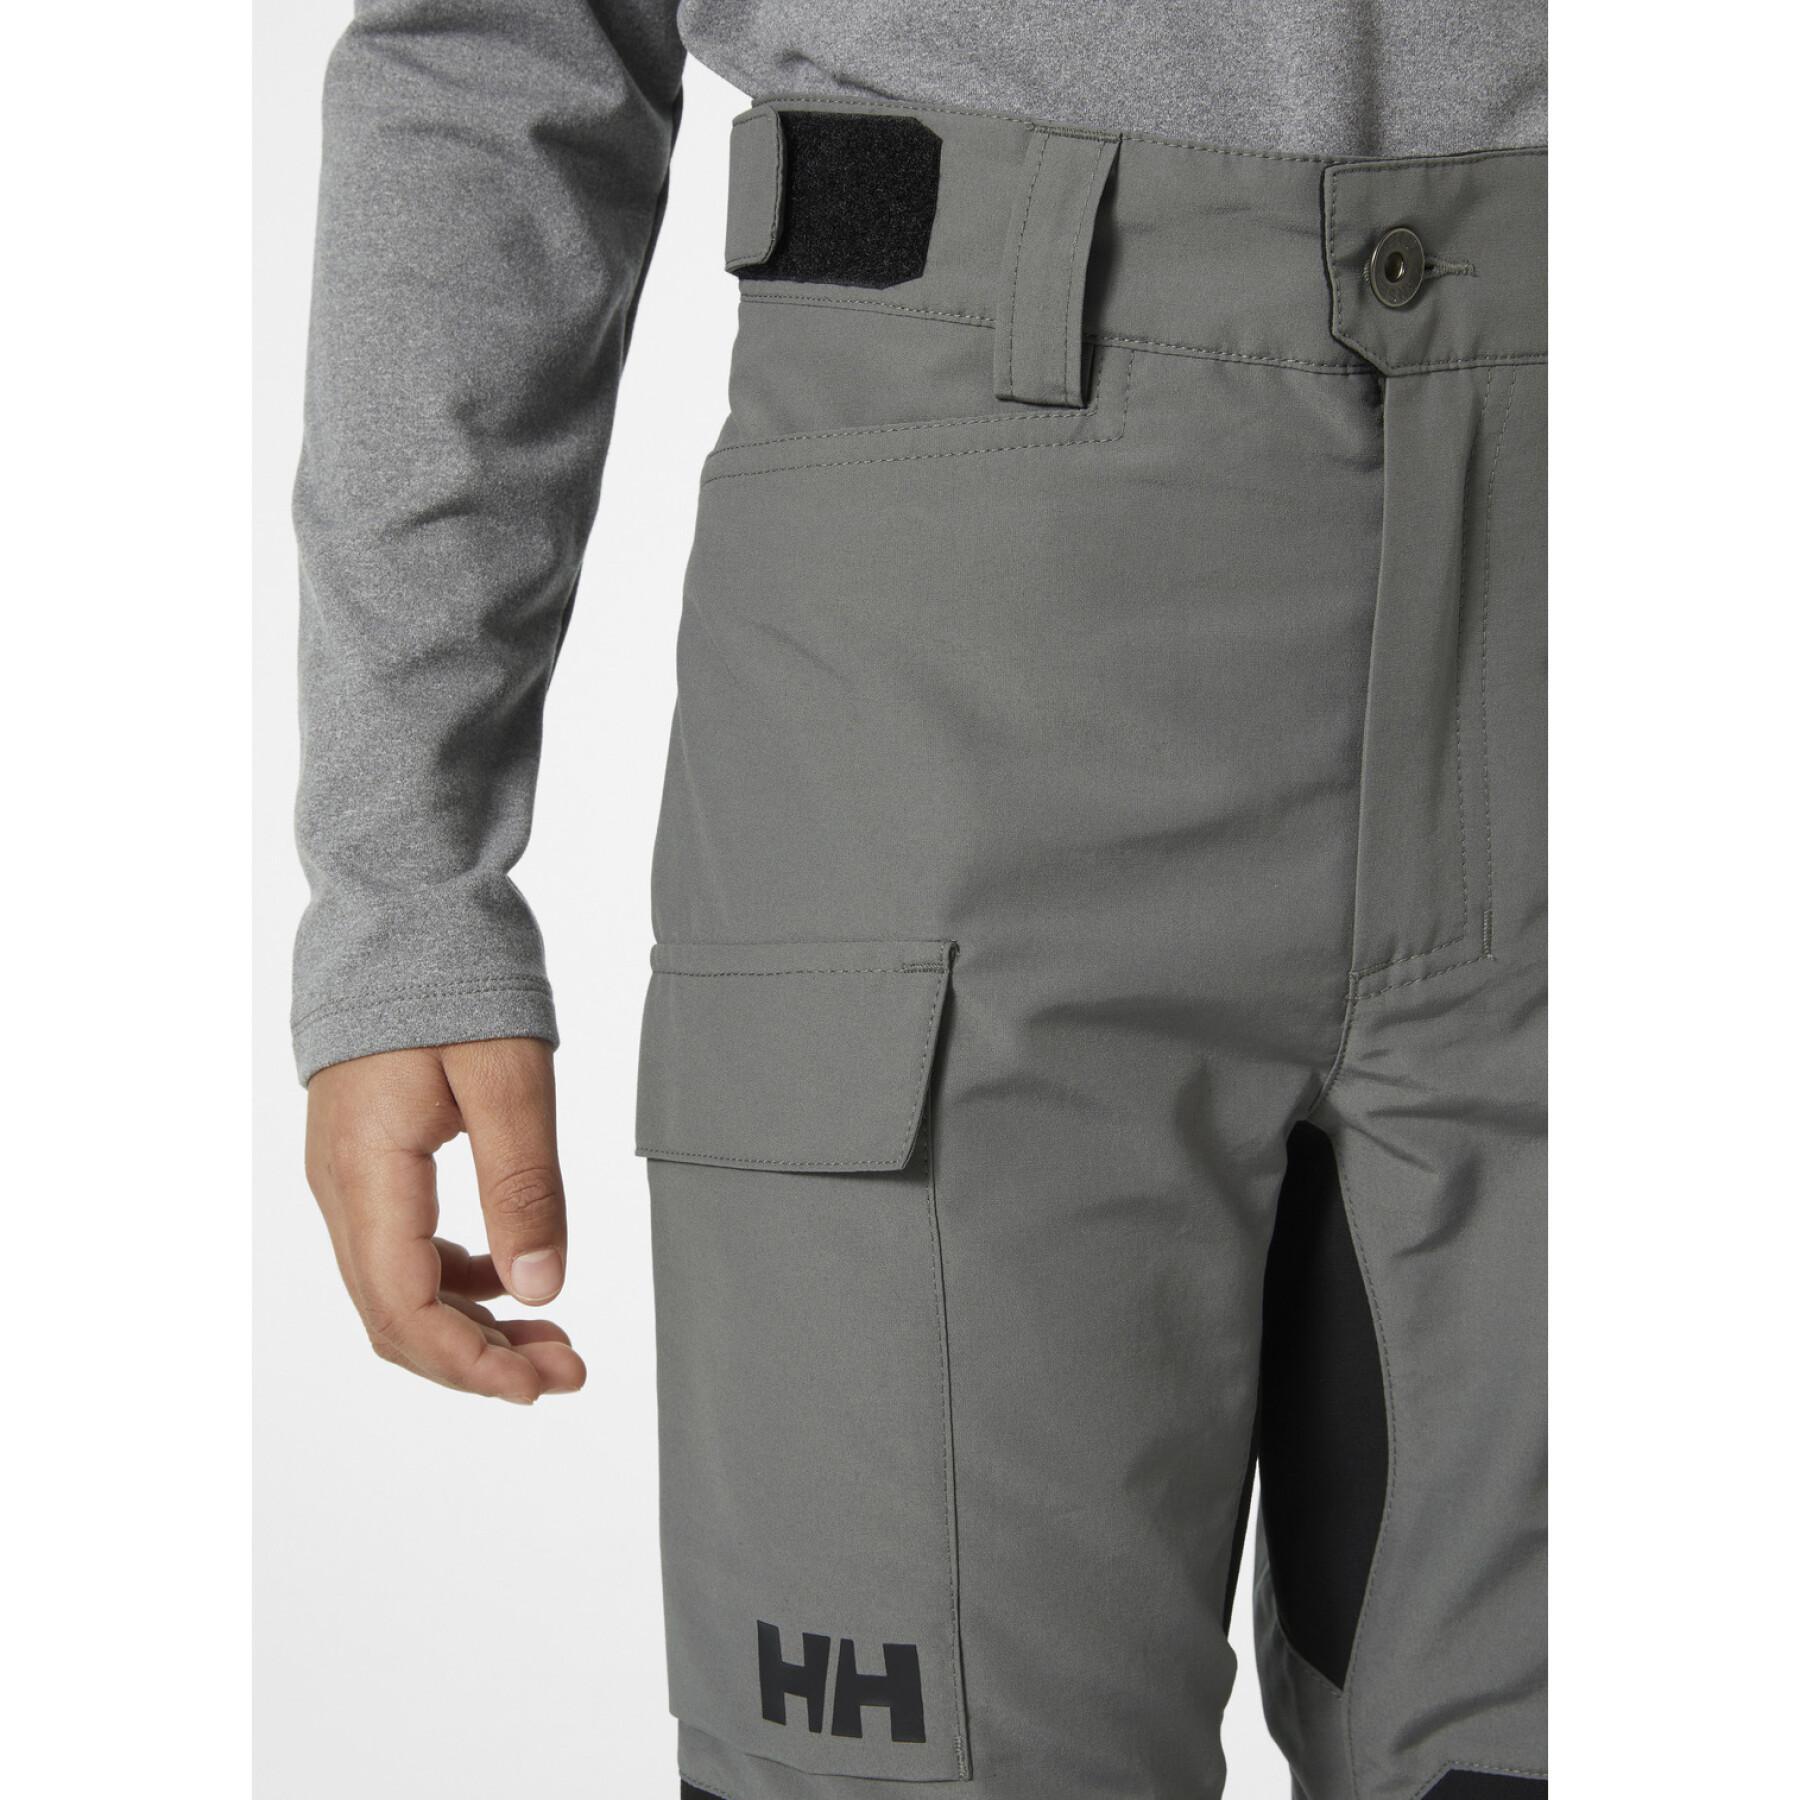 Pantalones de esquí para niños Helly Hansen Marka Tur